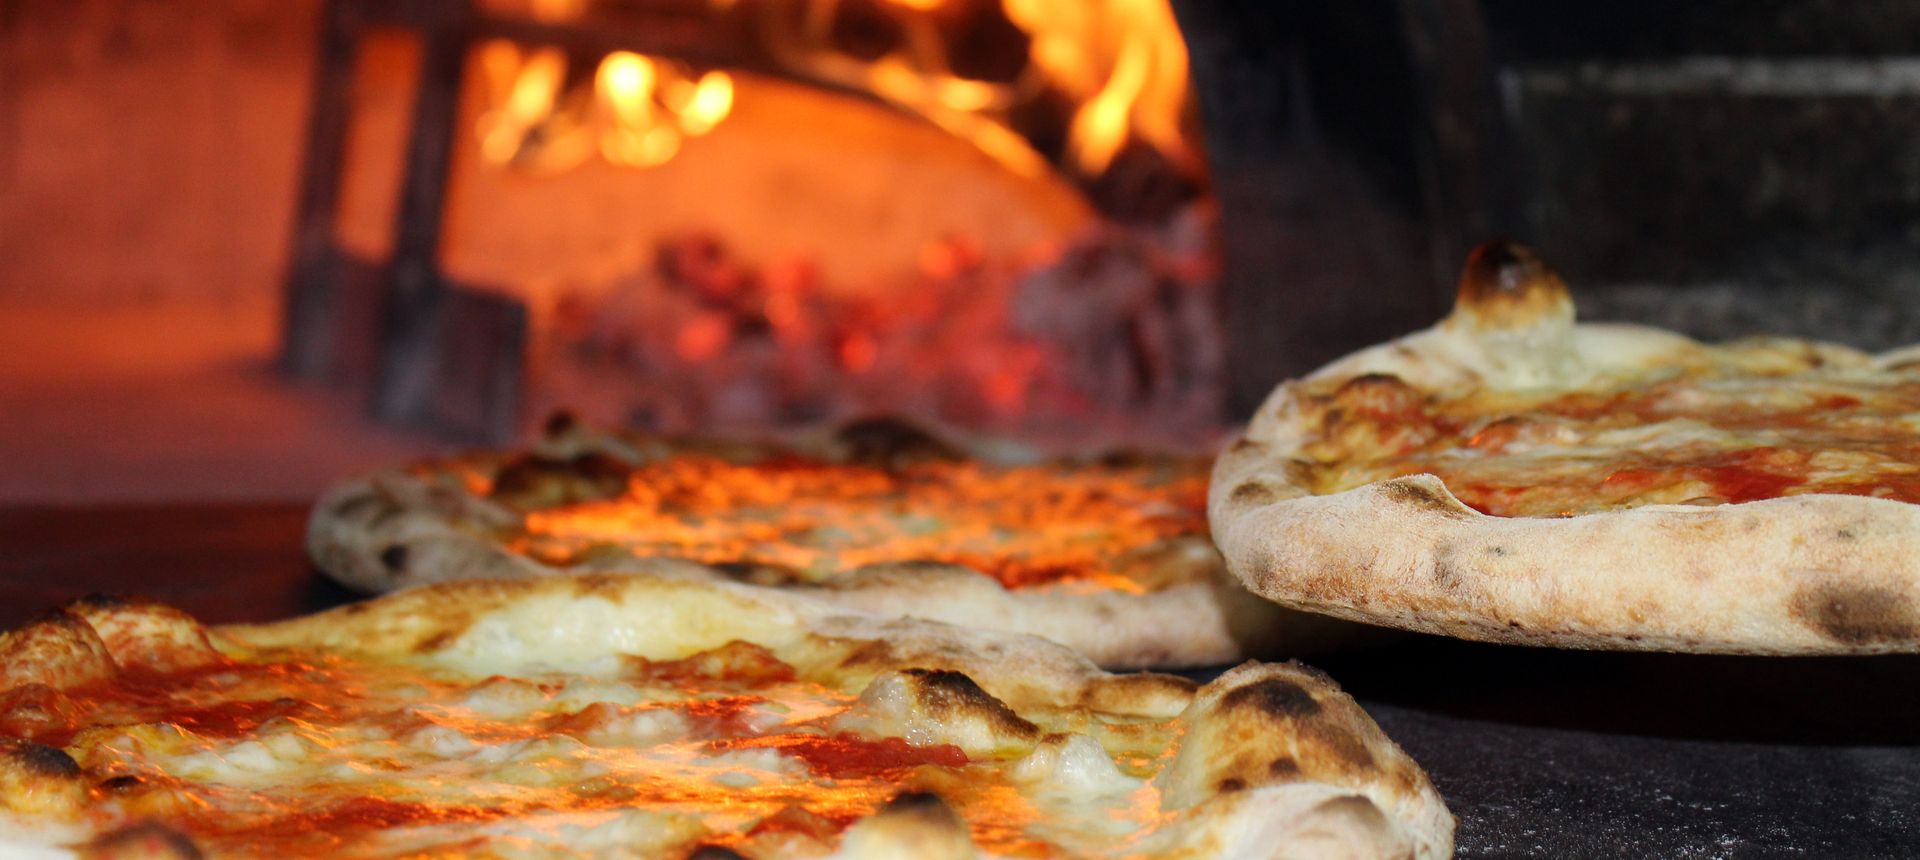 Pixabay: Pizza ©Salvatore Monetti